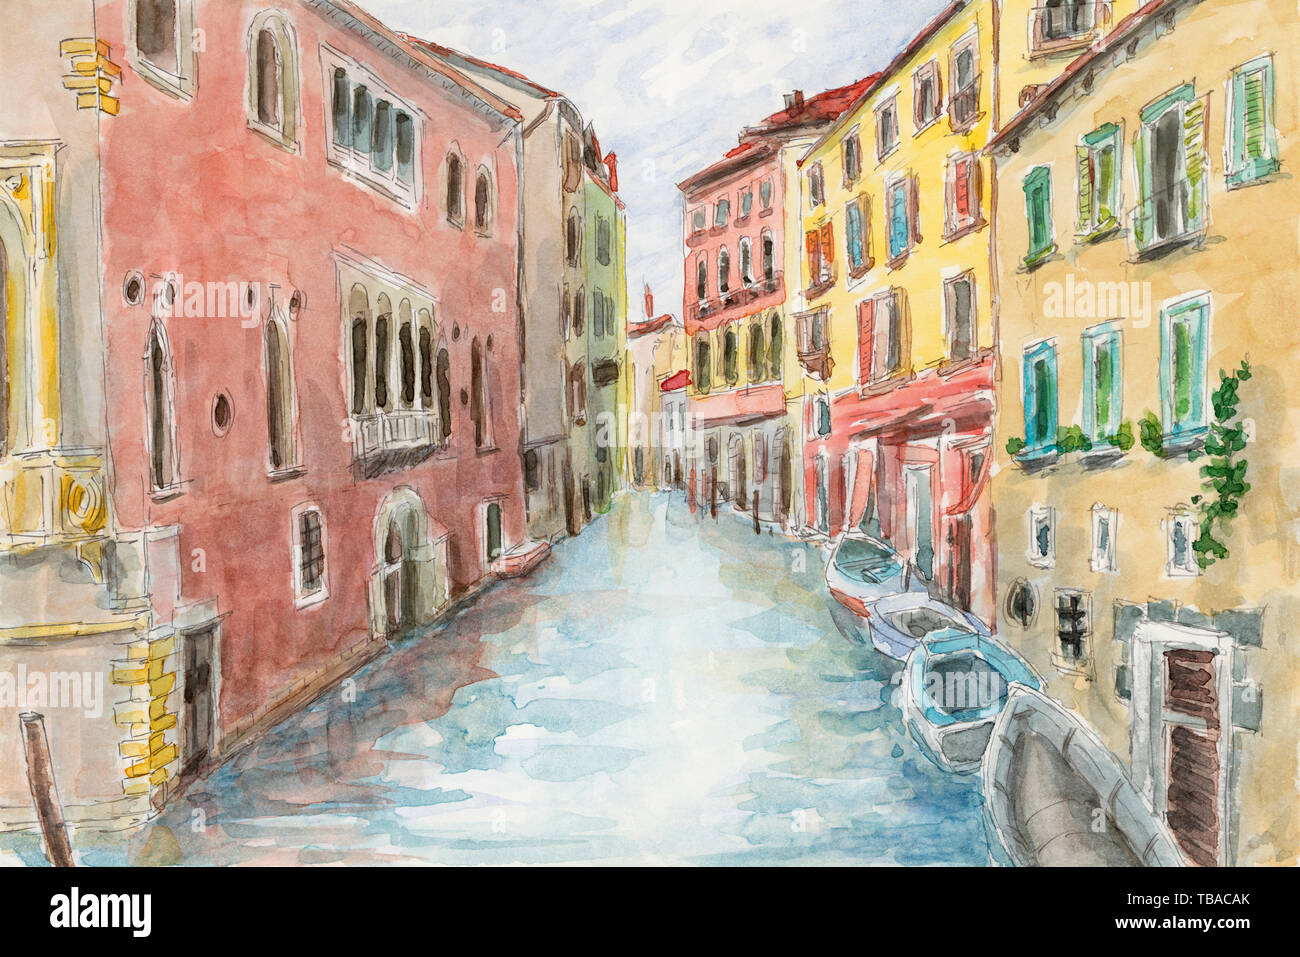 Canal entre bâtiments anciens. Venise, Italie. Crayon et aquarelle sur papier. Banque D'Images